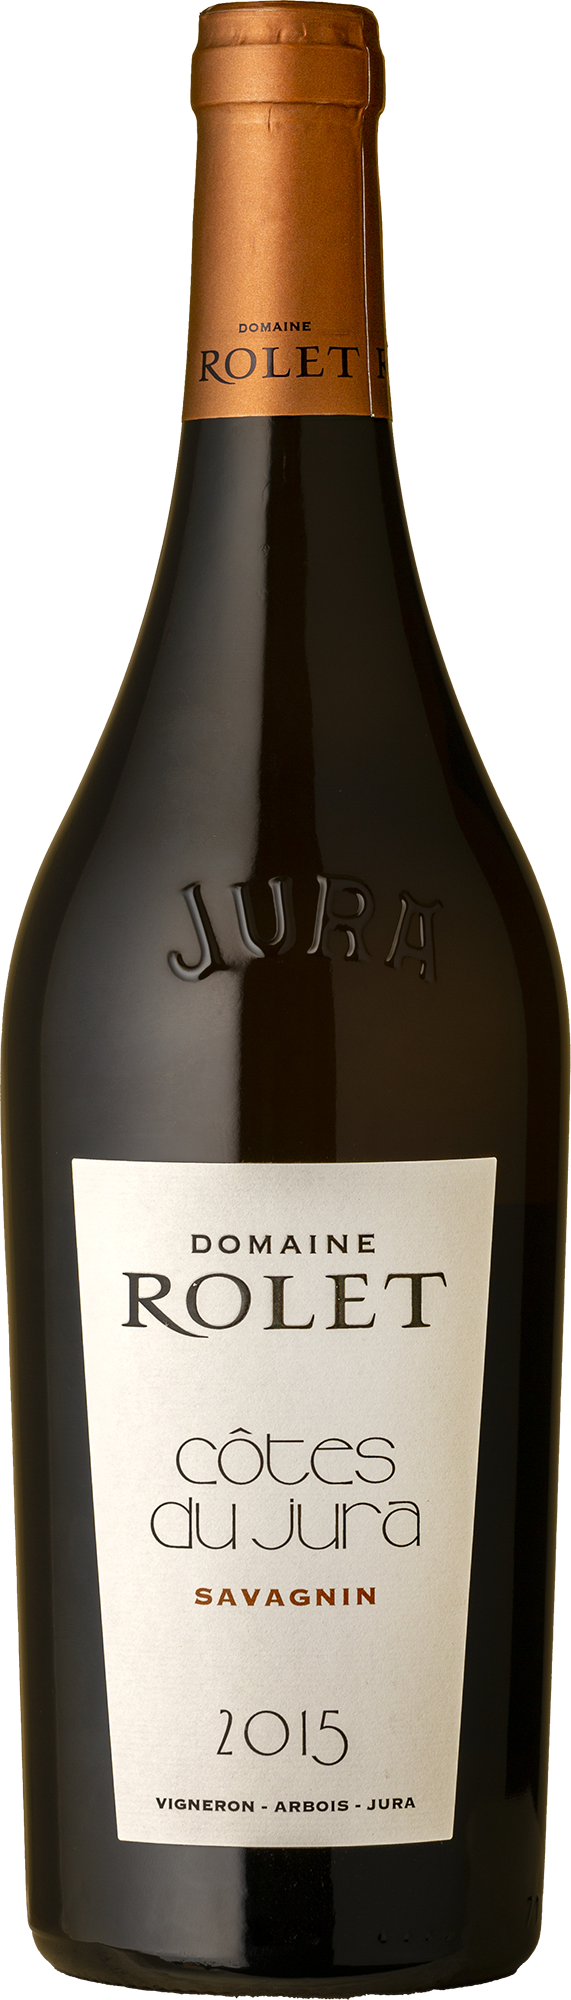 Domaine Rolet - Cotes du Jura Savagnin 2015 White Wine